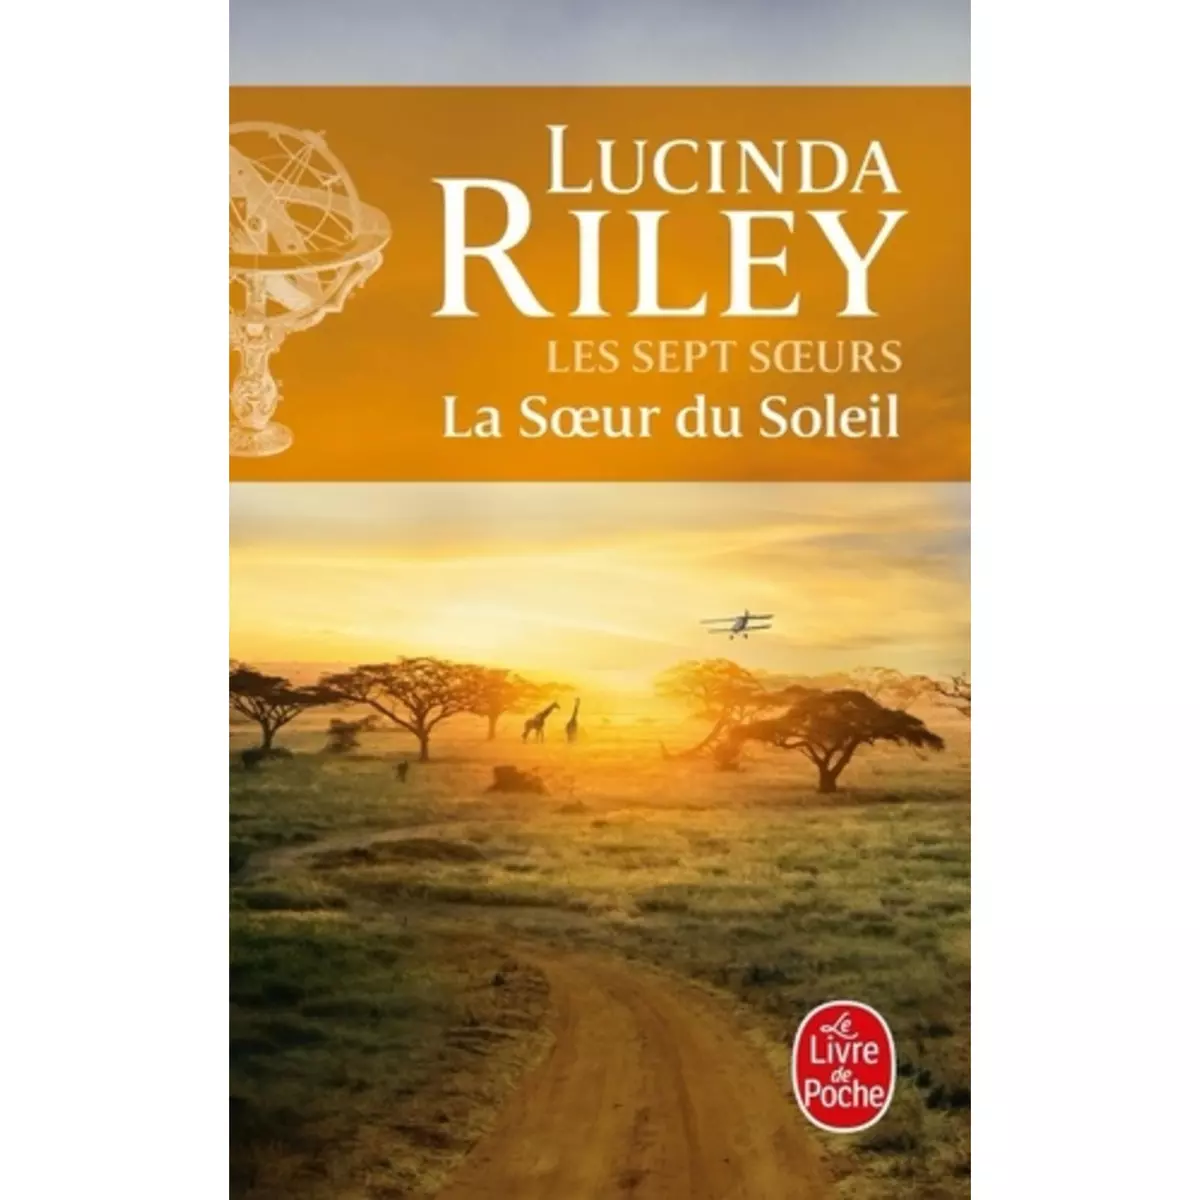  LES SEPT SOEURS TOME 6 : LA SOEUR DU SOLEIL. ELECTRA, Riley Lucinda